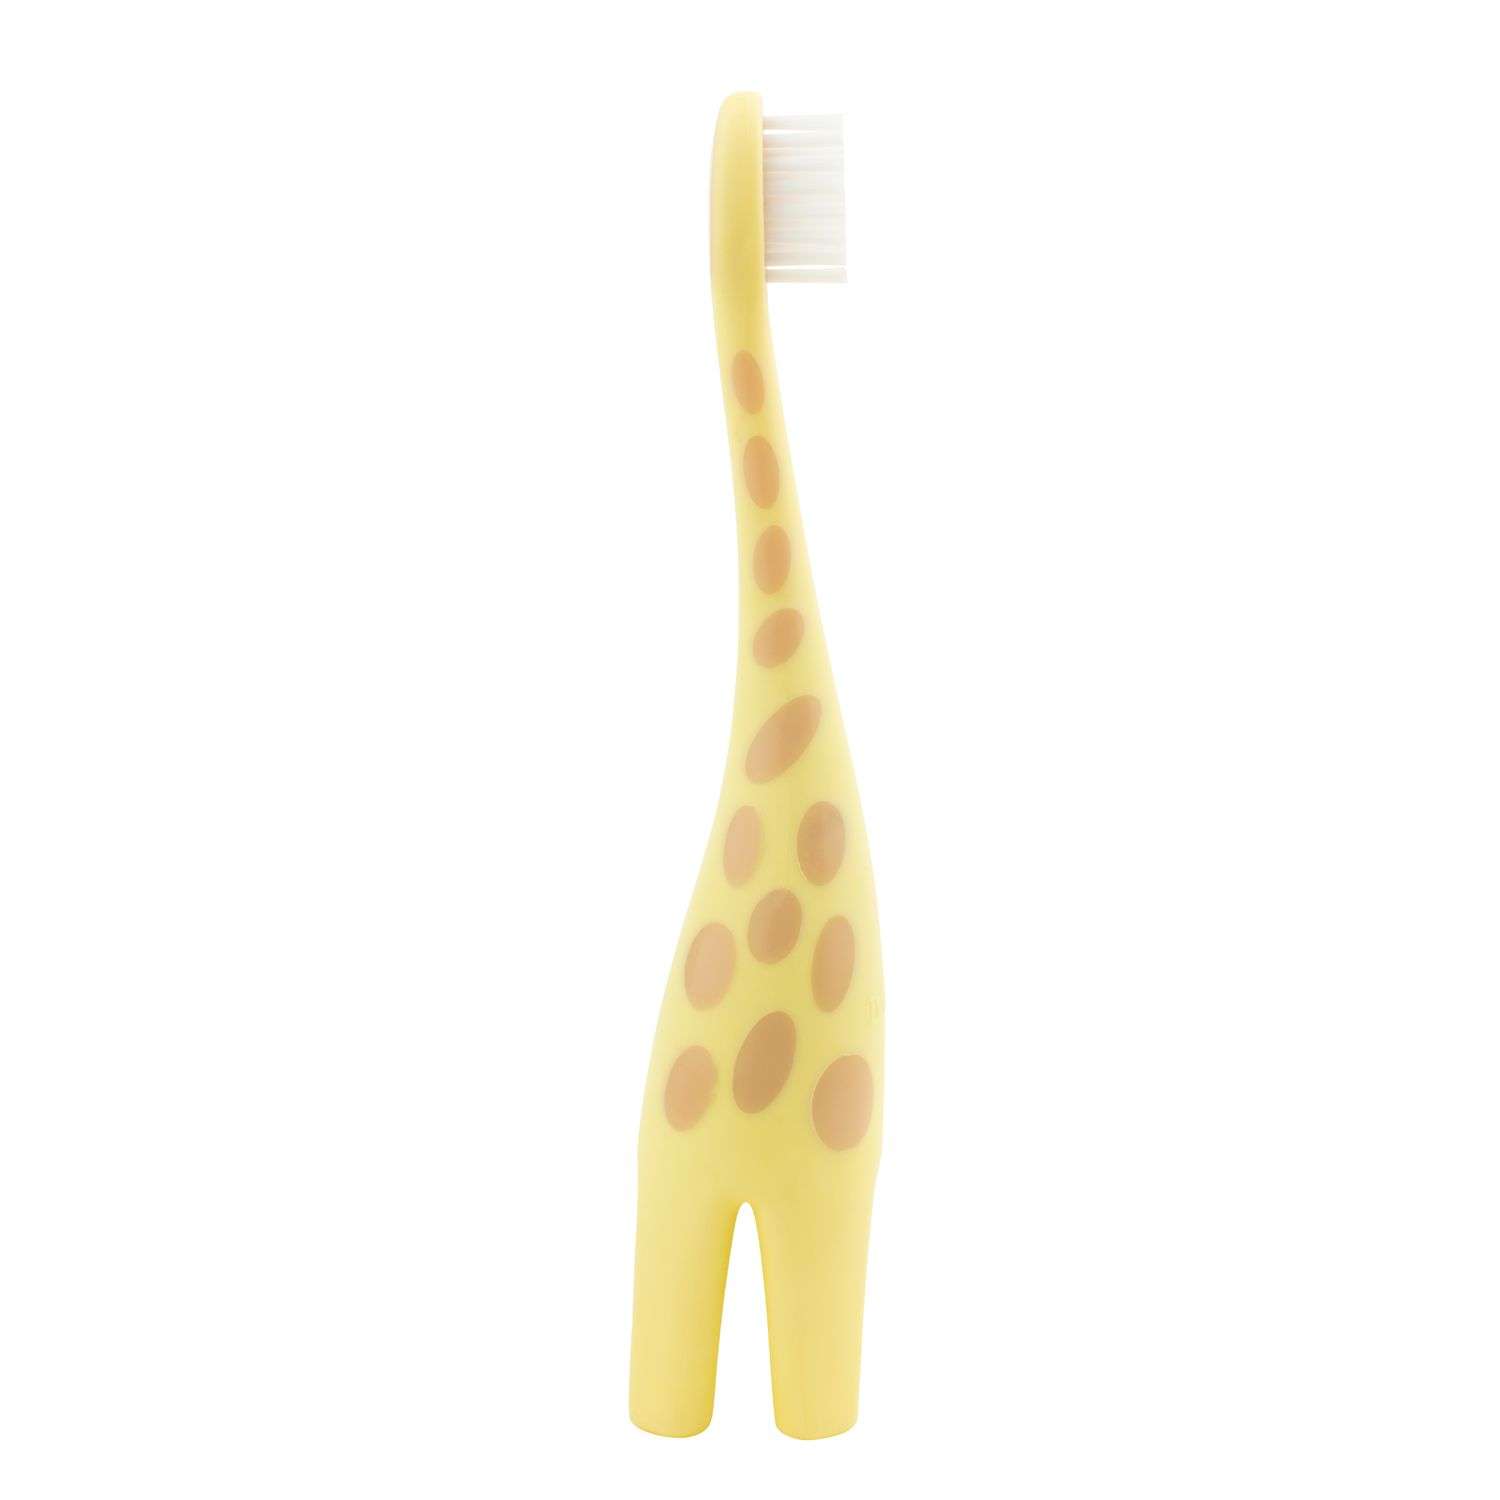 Зубная щётка Dr Brown's Жирафик Жёлтый - фото 4